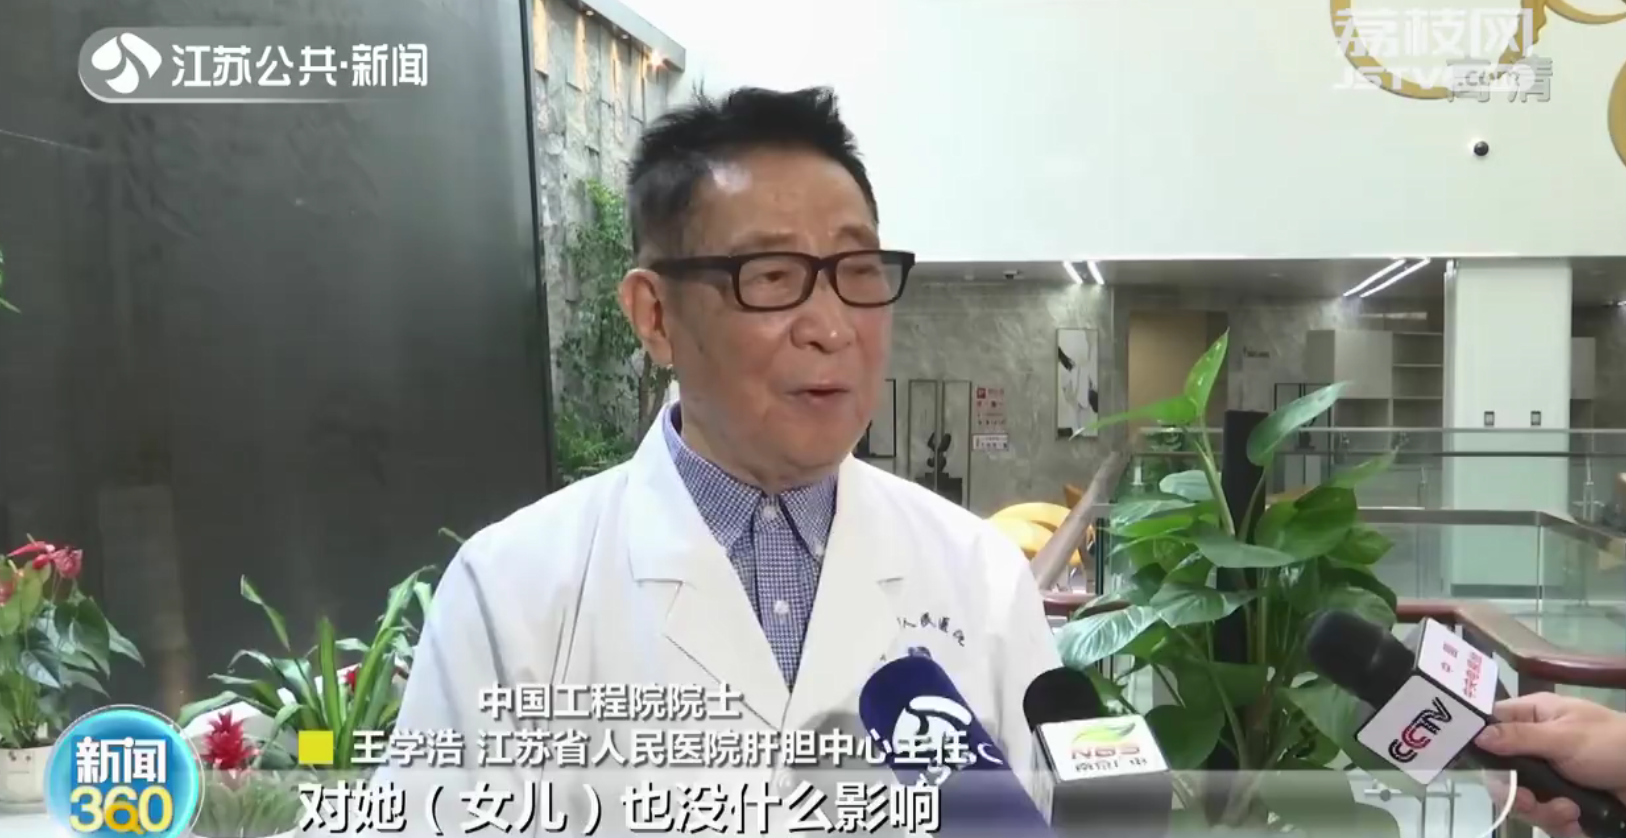 22年前一场生死施救 让扬州考生坚定报考医科院校